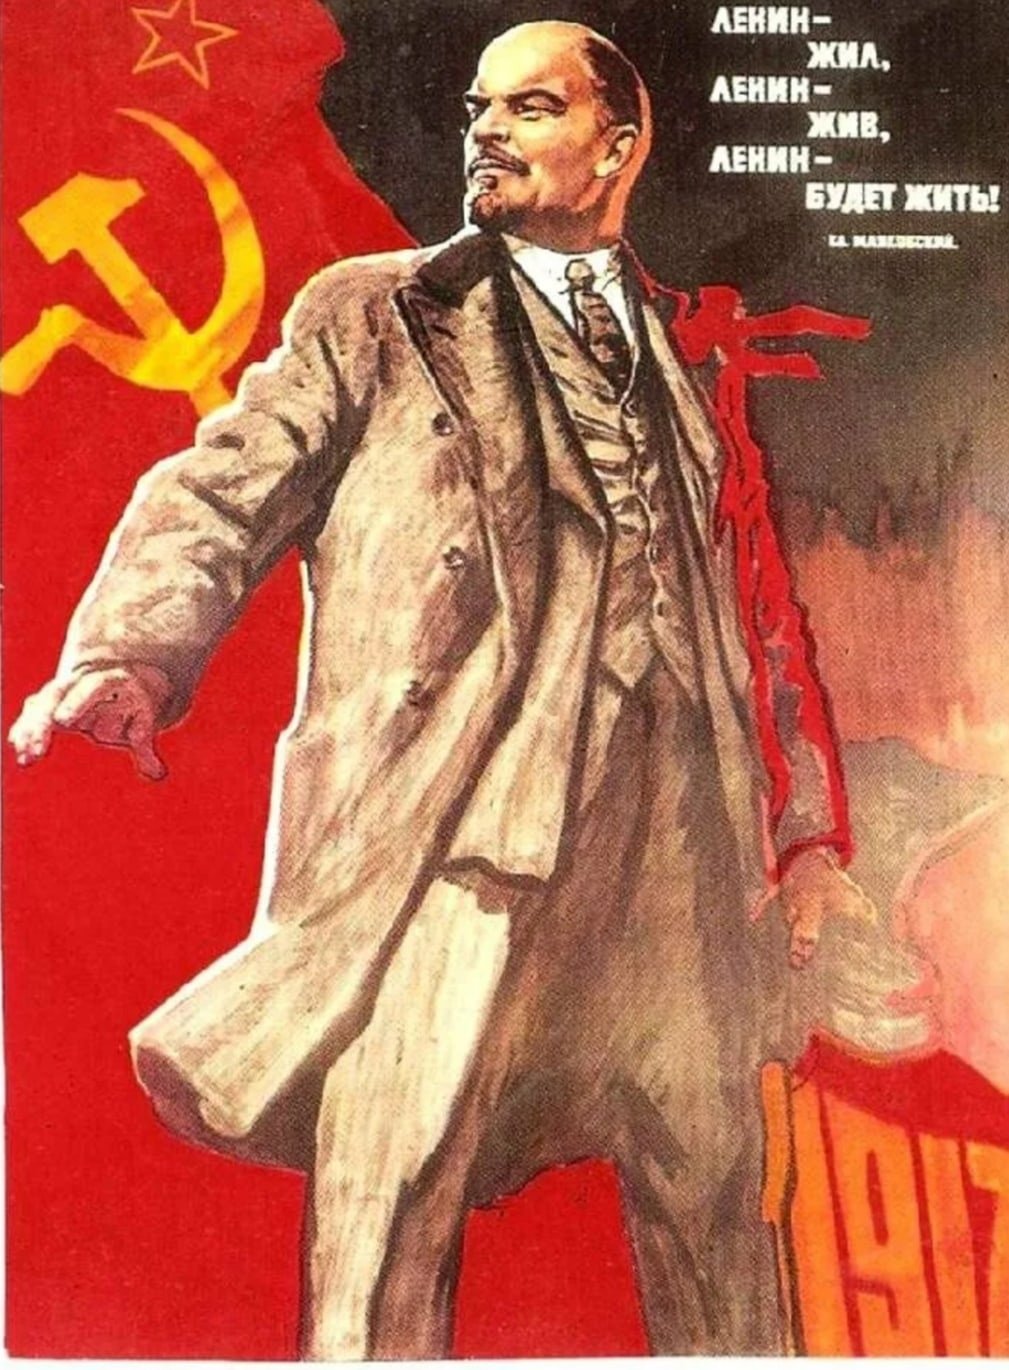 Открытки с днем рождения ленина. Ленин плакат. Советские плакаты с Лениным. День рождения Ленина плакат.